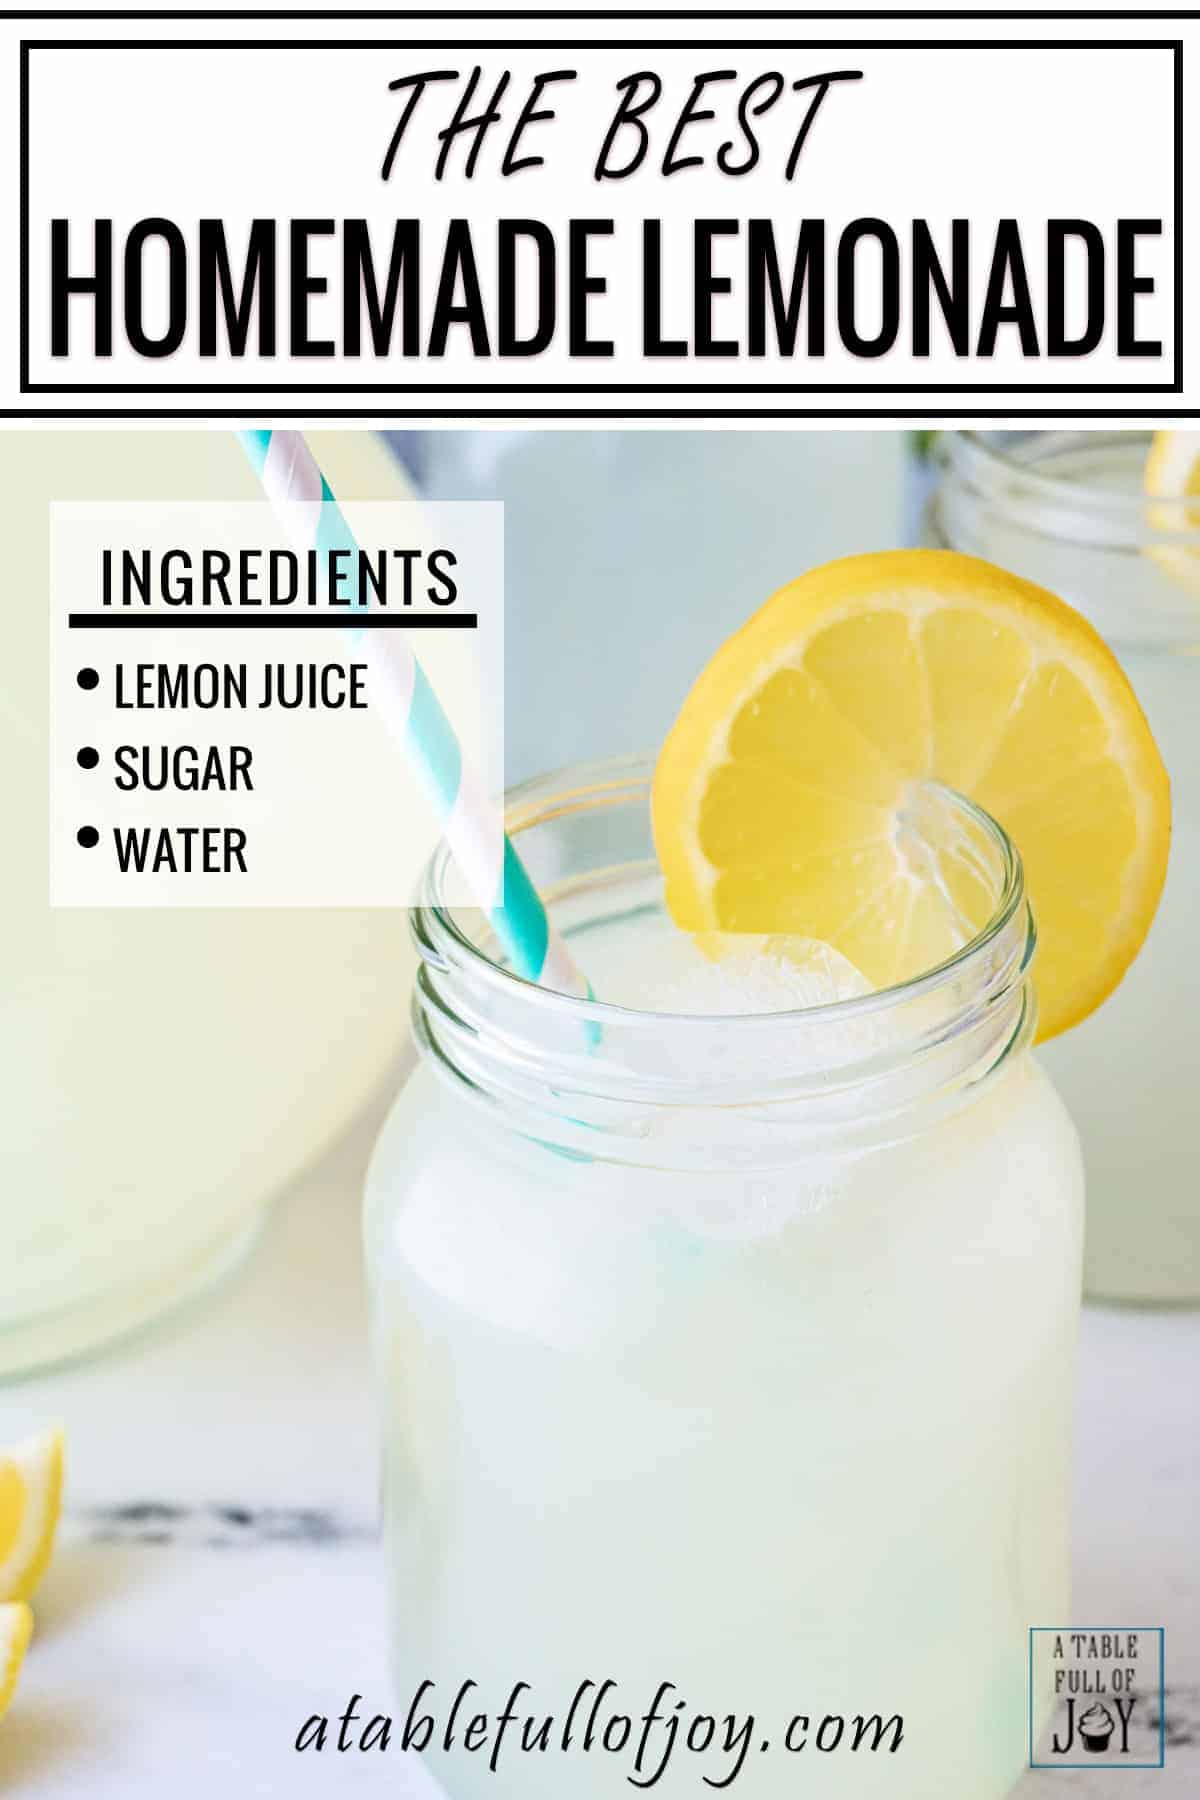 Homemade Lemonade Pinterest Pin